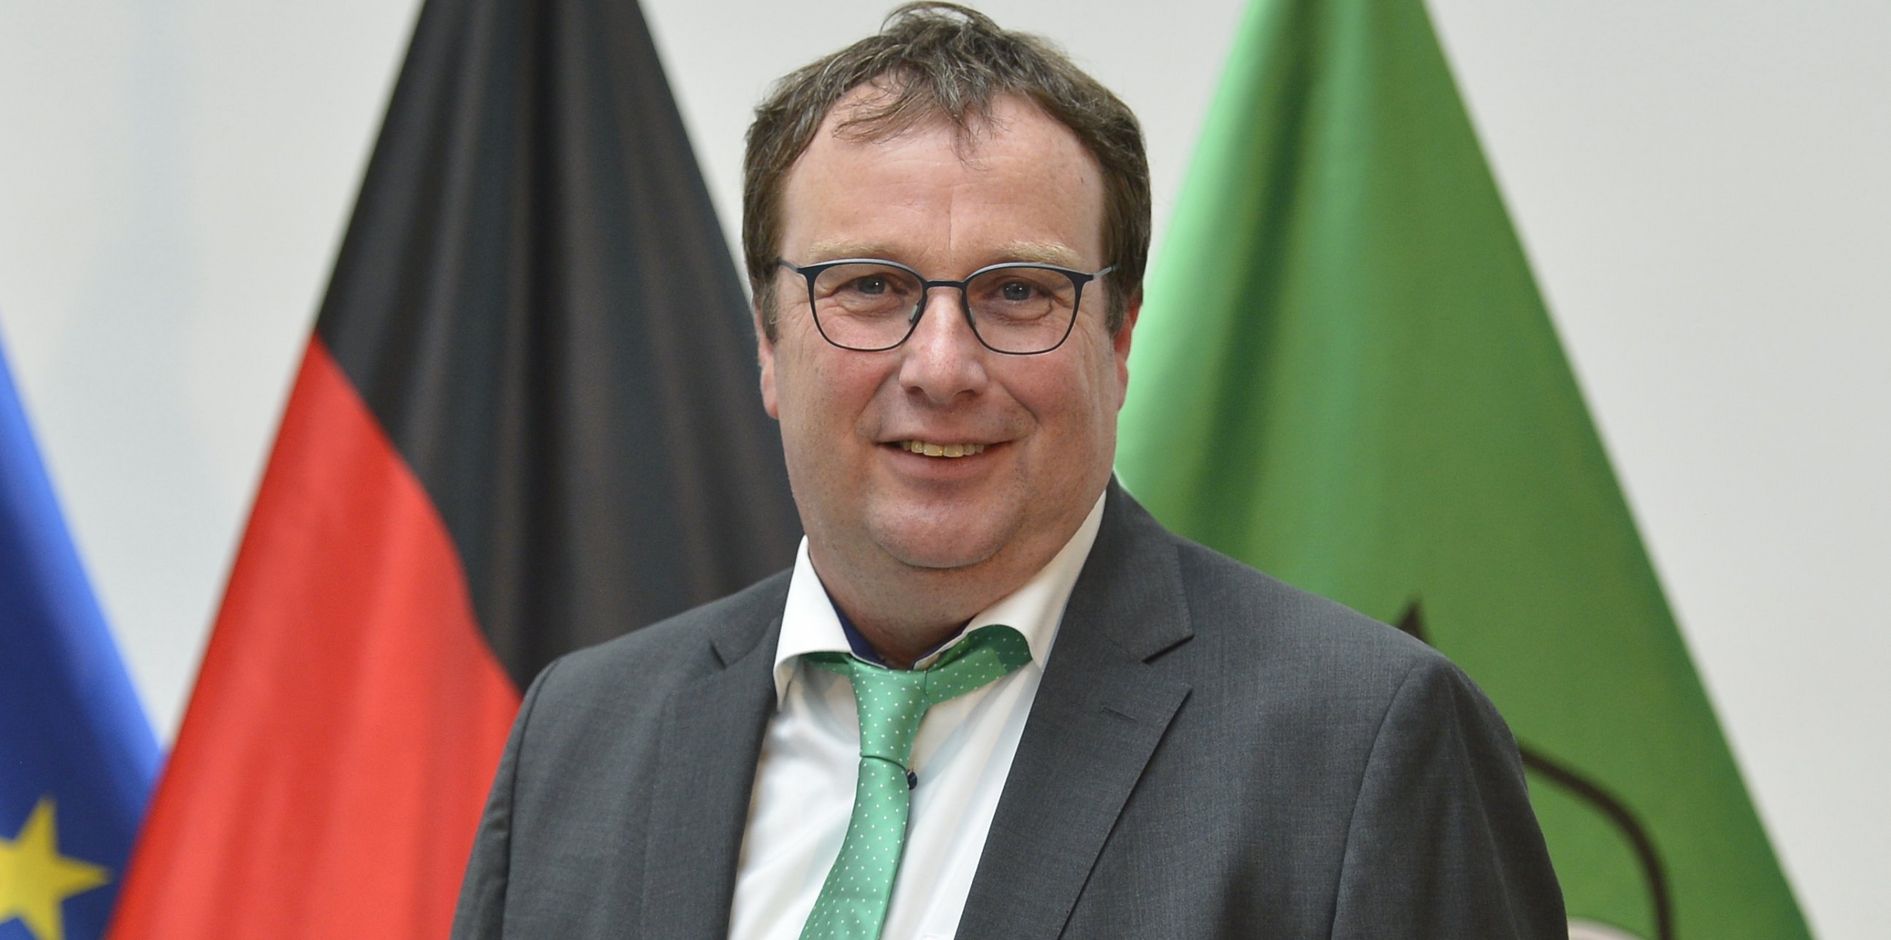 Wir sehen ein Portrait des NRW-Verkehrsministers Oliver Krischer.